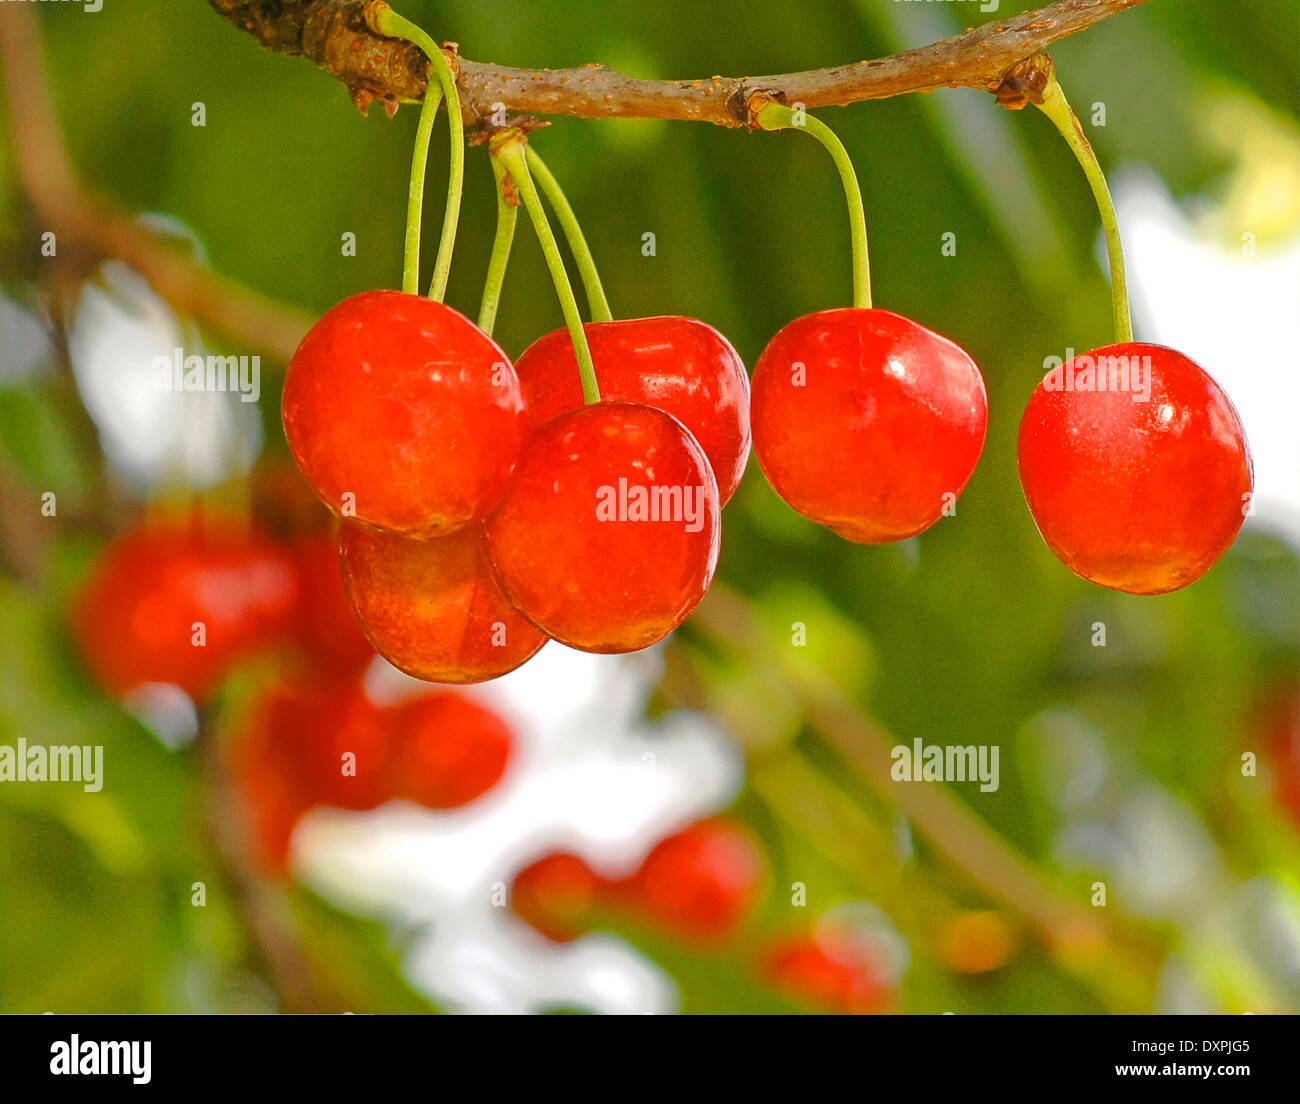 cherries on the tree Stock Photo